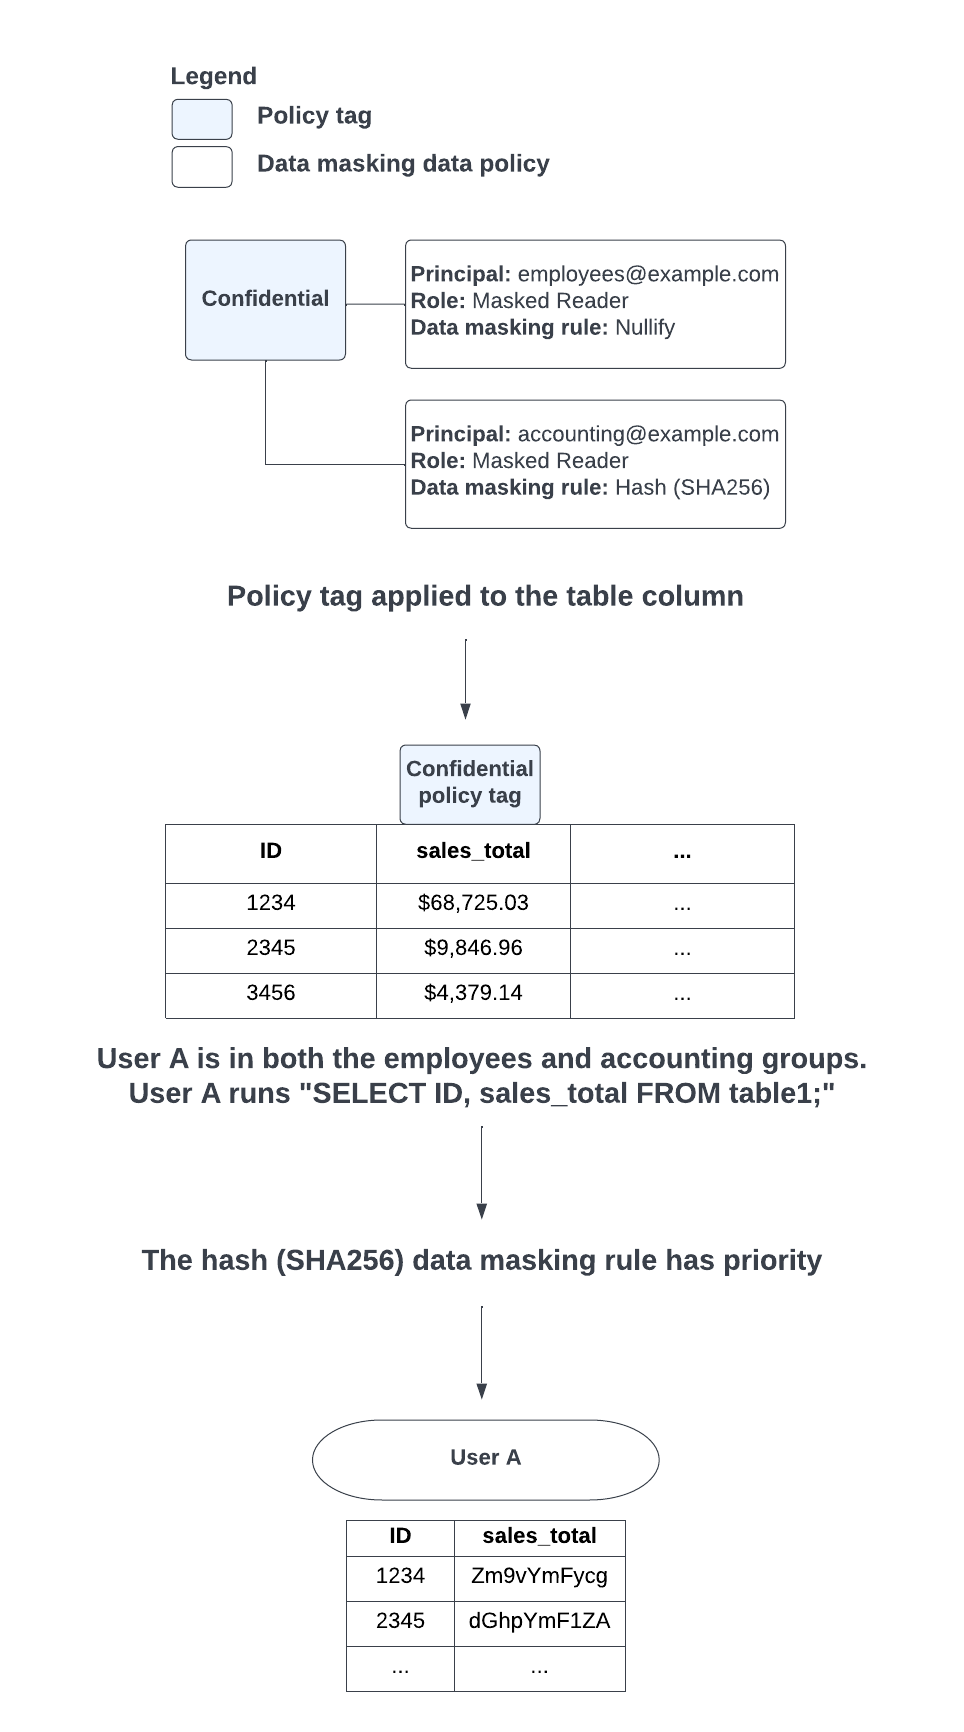 사용자가 있는 그룹으로 인해 무효화 및 해시(SHA-256) 데이터 마스킹 규칙 적용 간에 충돌이 발생하는 경우 해시(SHA-256) 데이터 마스킹 규칙이 우선적으로 적용됩니다.